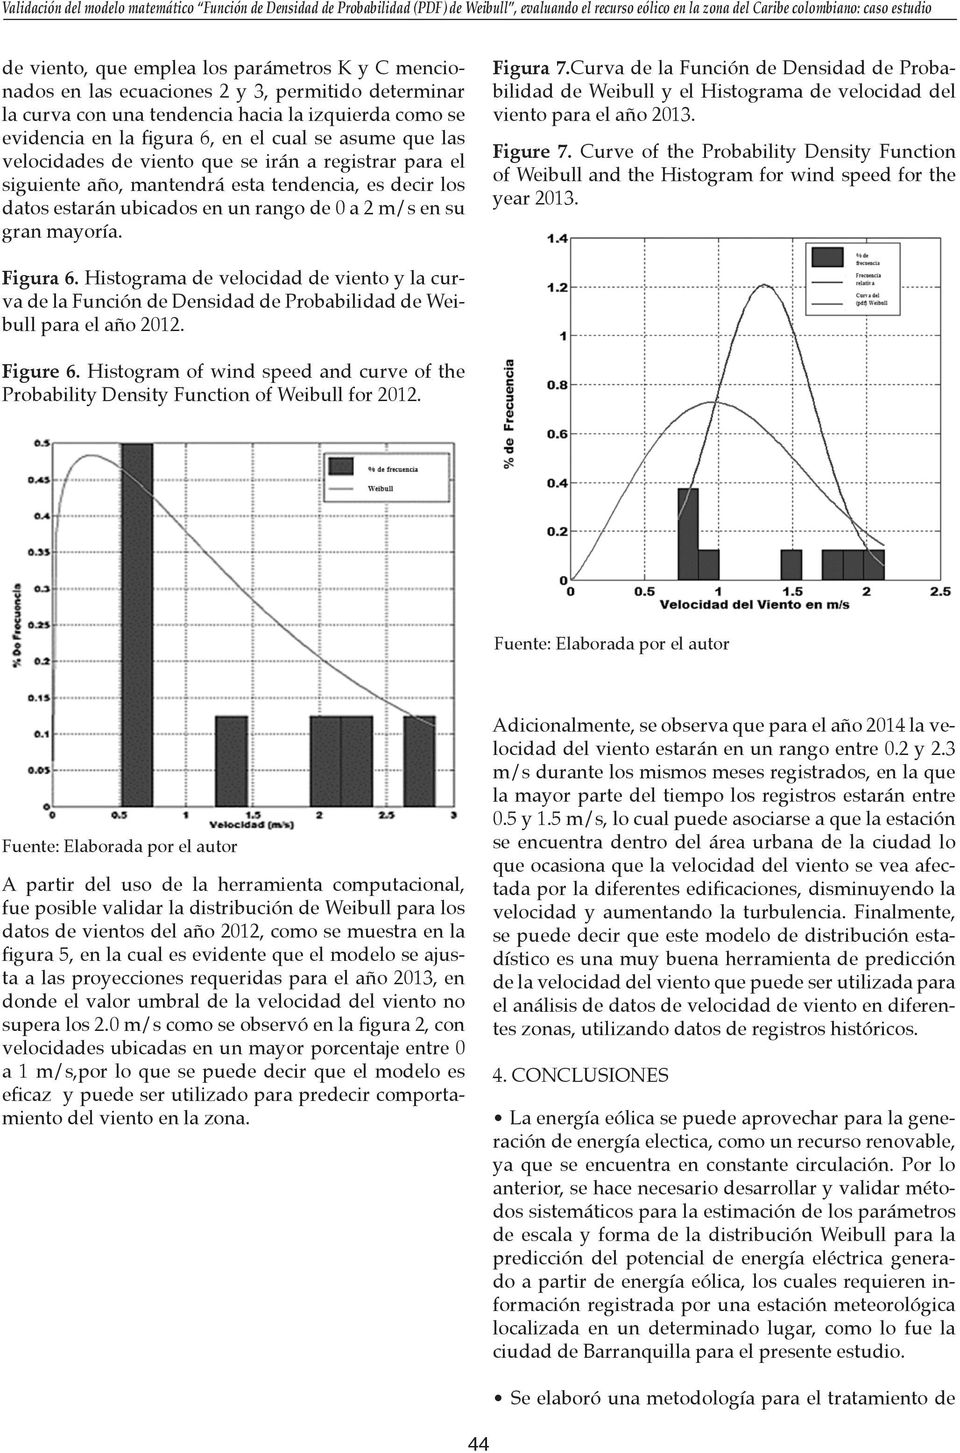 Curva de la Función de Densidad de Probabilidad de Weibull y el Histograma de velocidad del viento para el año 2013. Figure 7.